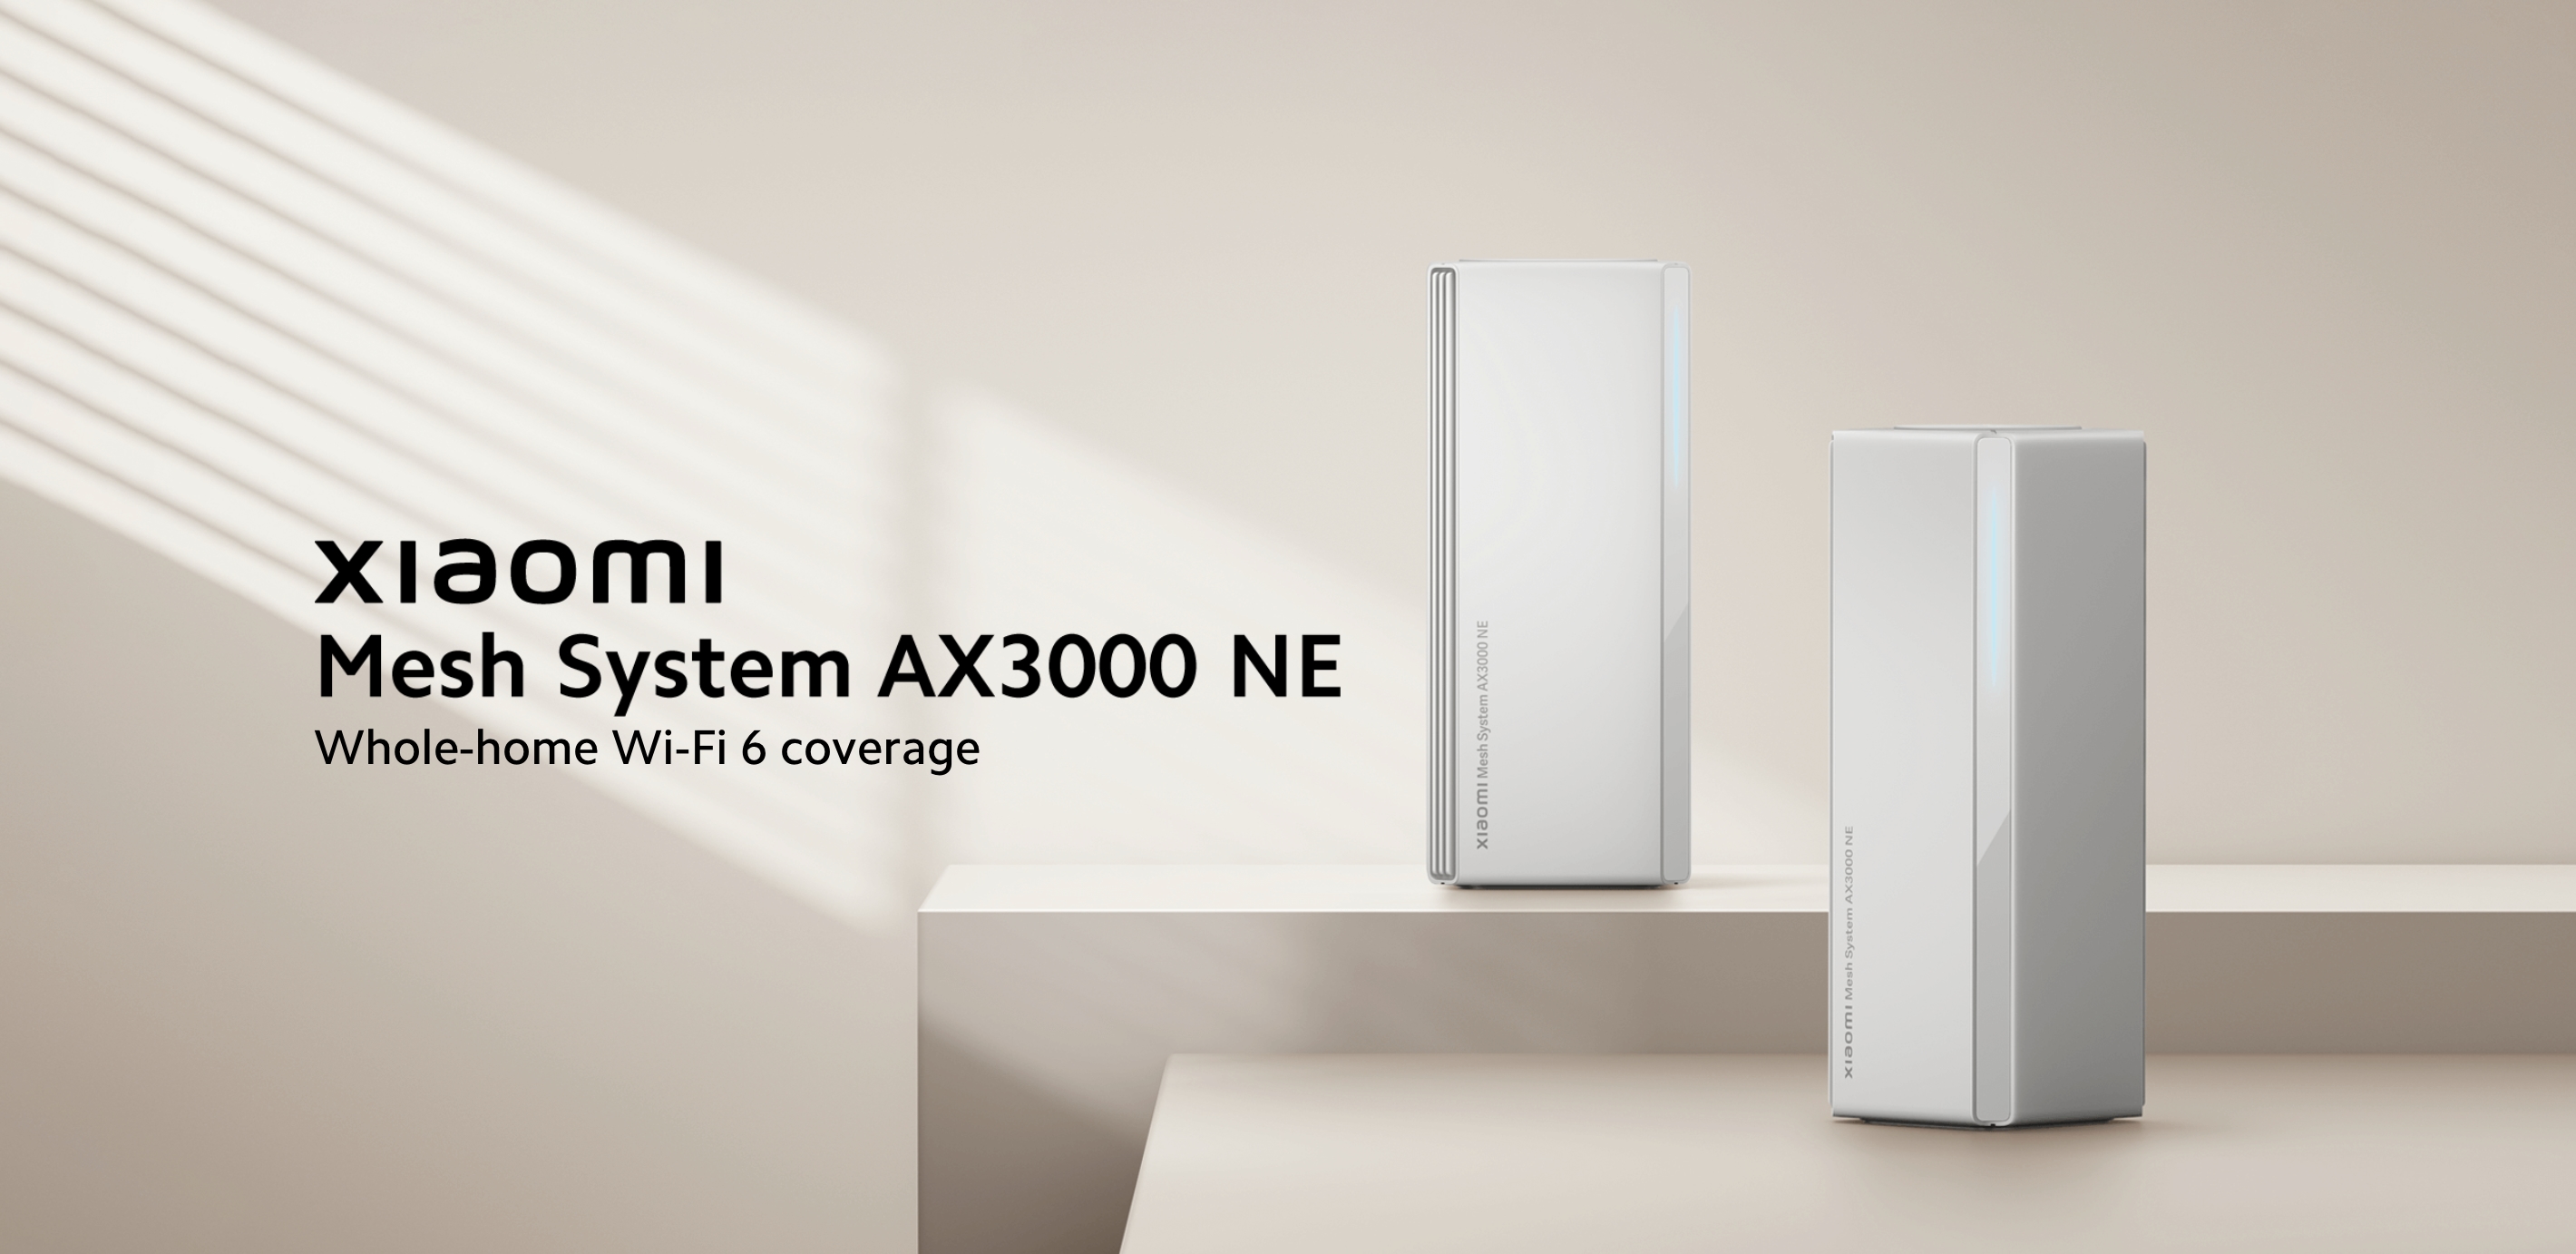 Xiaomi wprowadziło na globalny rynek system AX3000 NE Mesh z obsługą WiFi 6. 